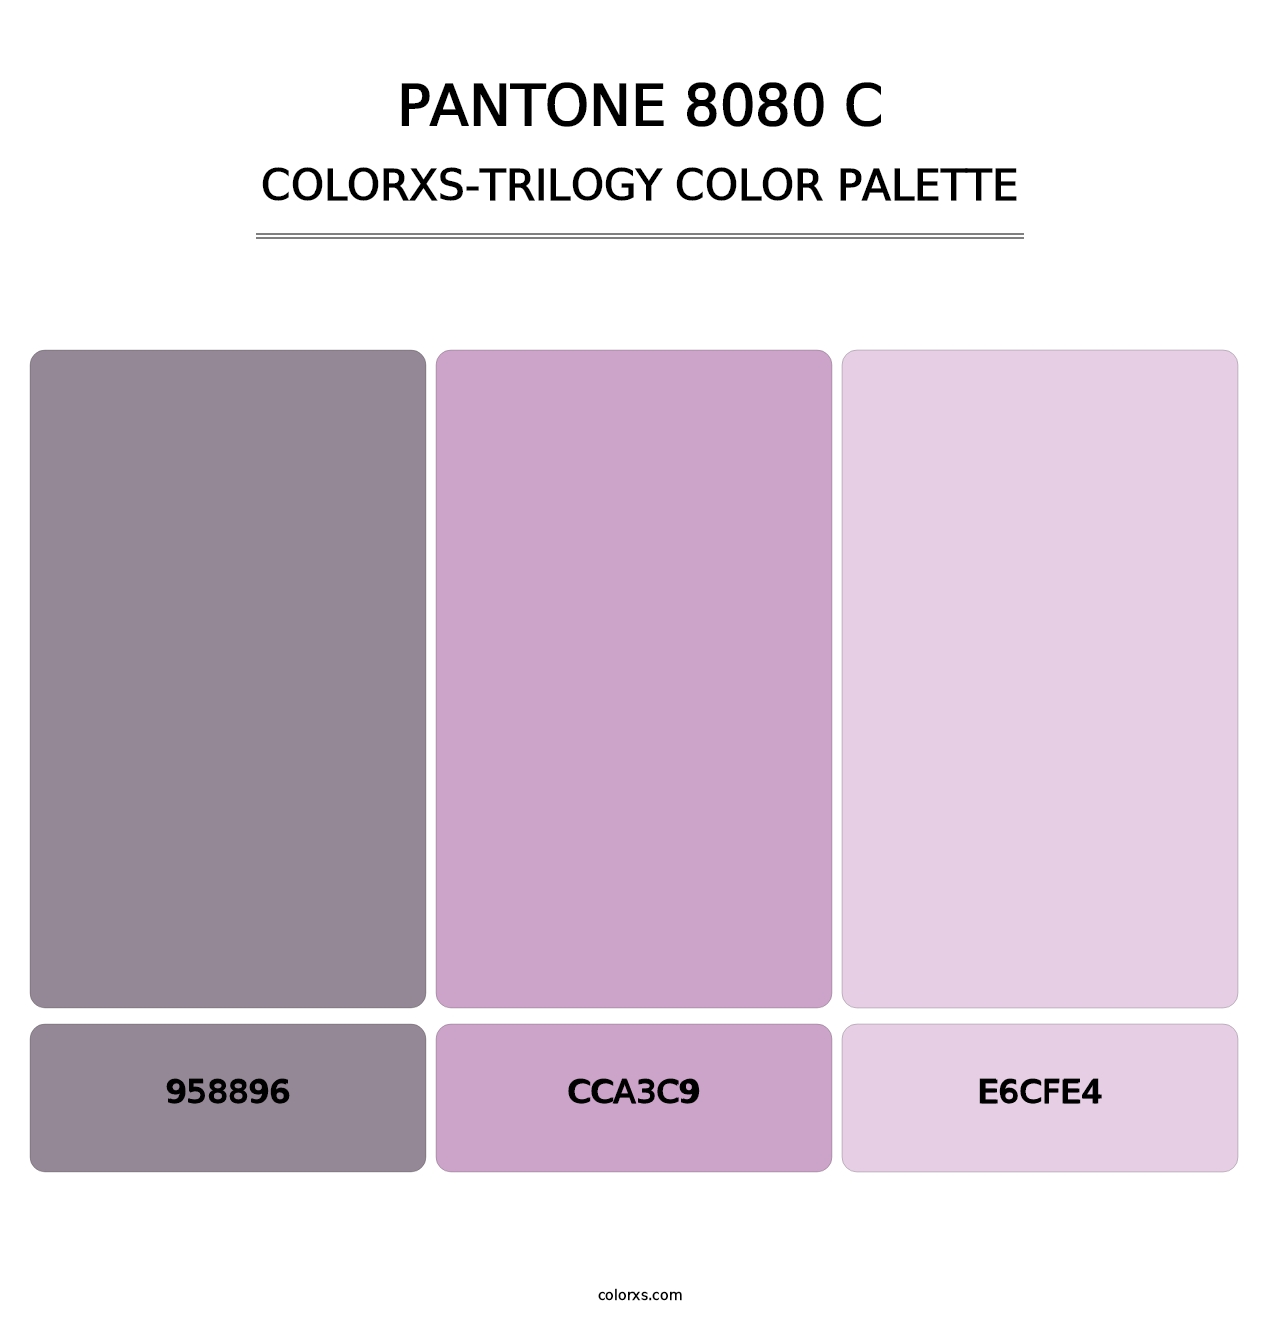 PANTONE 8080 C - Colorxs Trilogy Palette